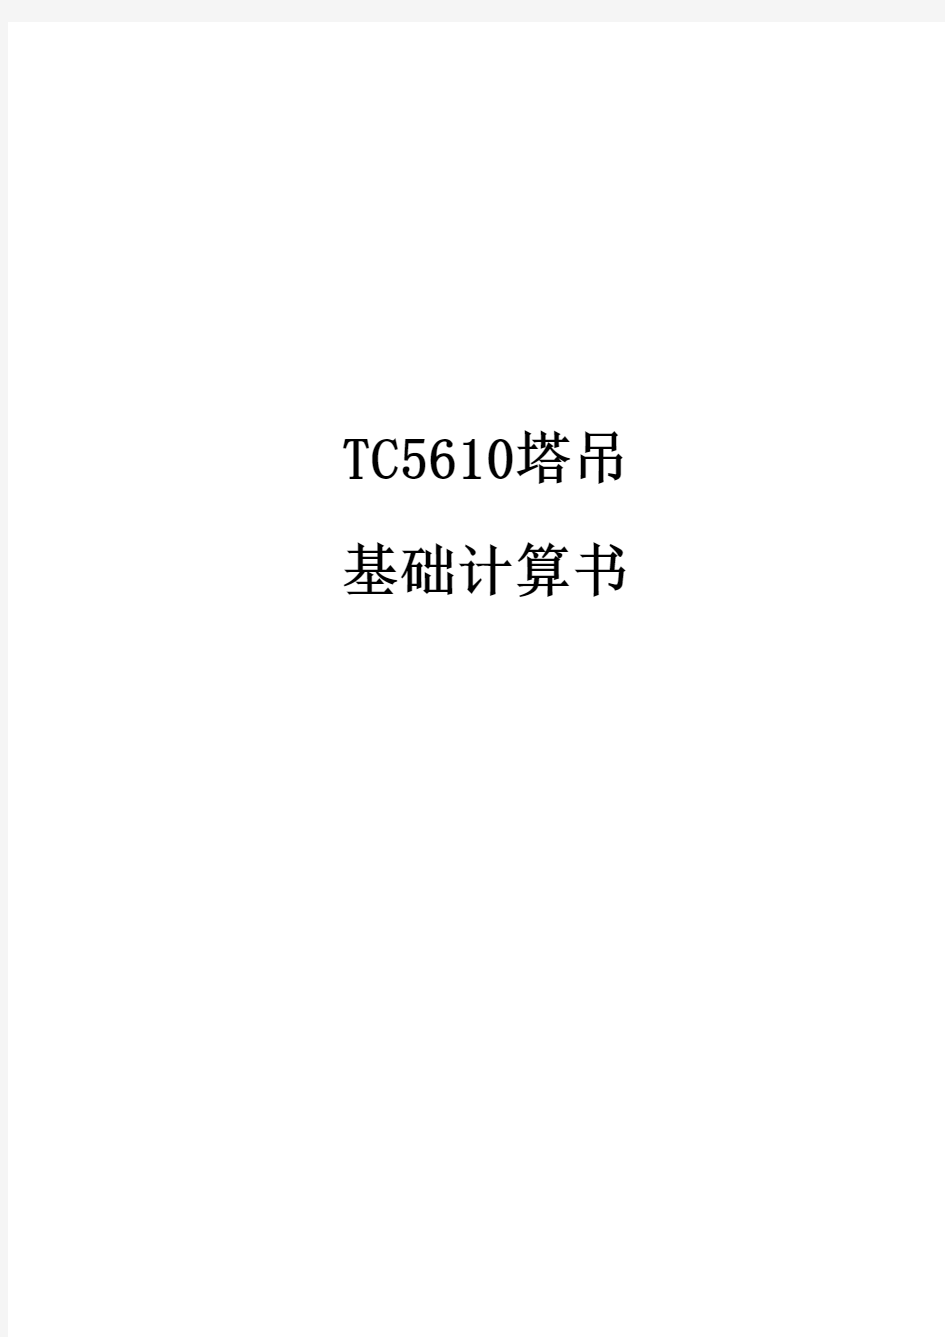 TC5610塔吊基计算书